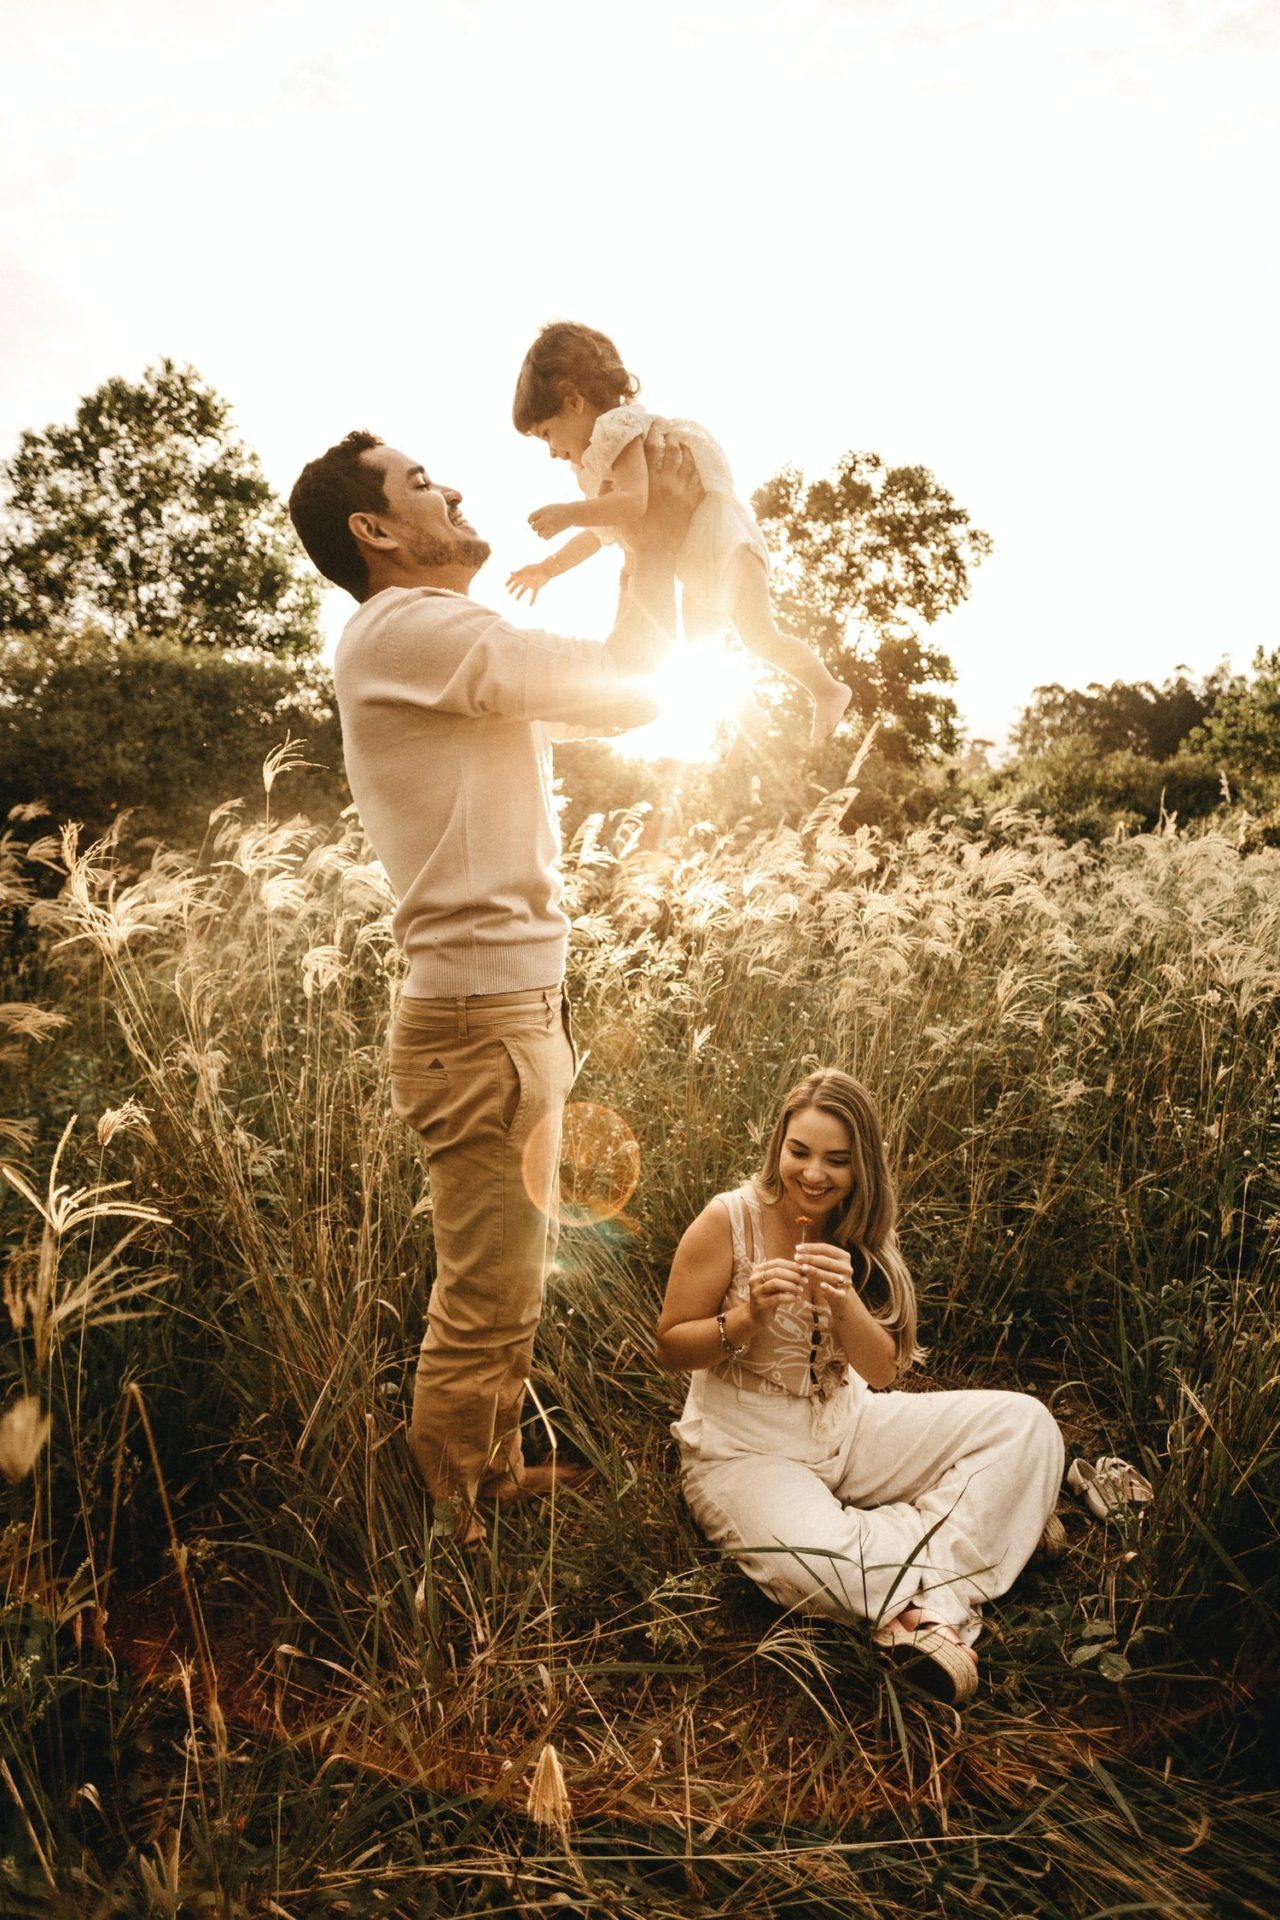 Uma família feliz em um campo ensolarado.